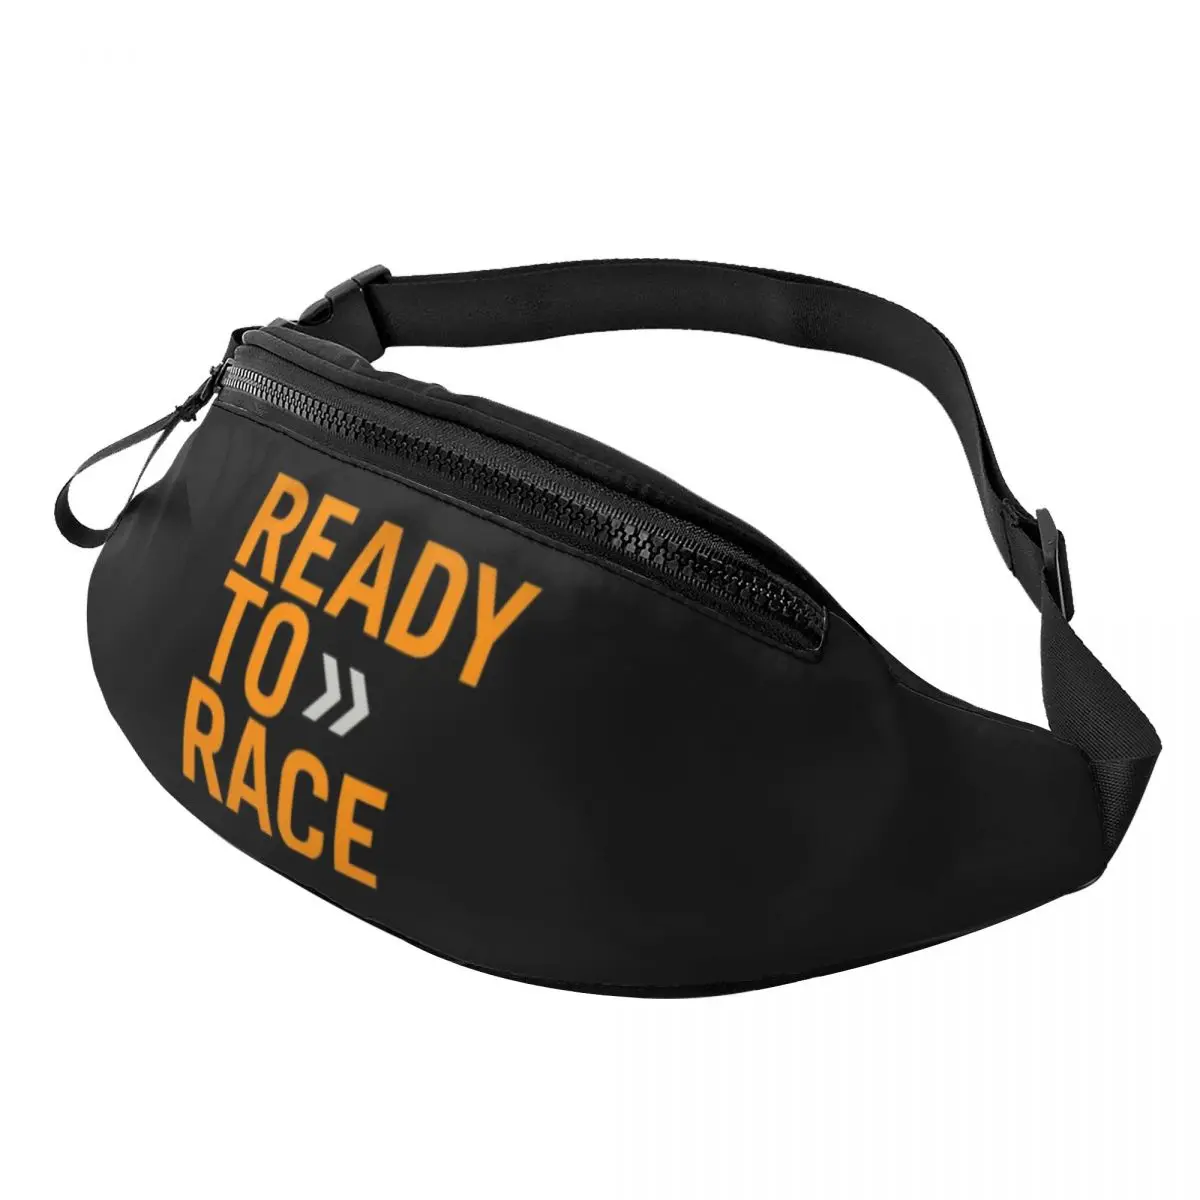 

Забавная сумка Ready To Race для мужчин и женщин, поясная сумочка кросс-боди для мотокросса, битумного велосипеда, для путешествий, телефона, денег